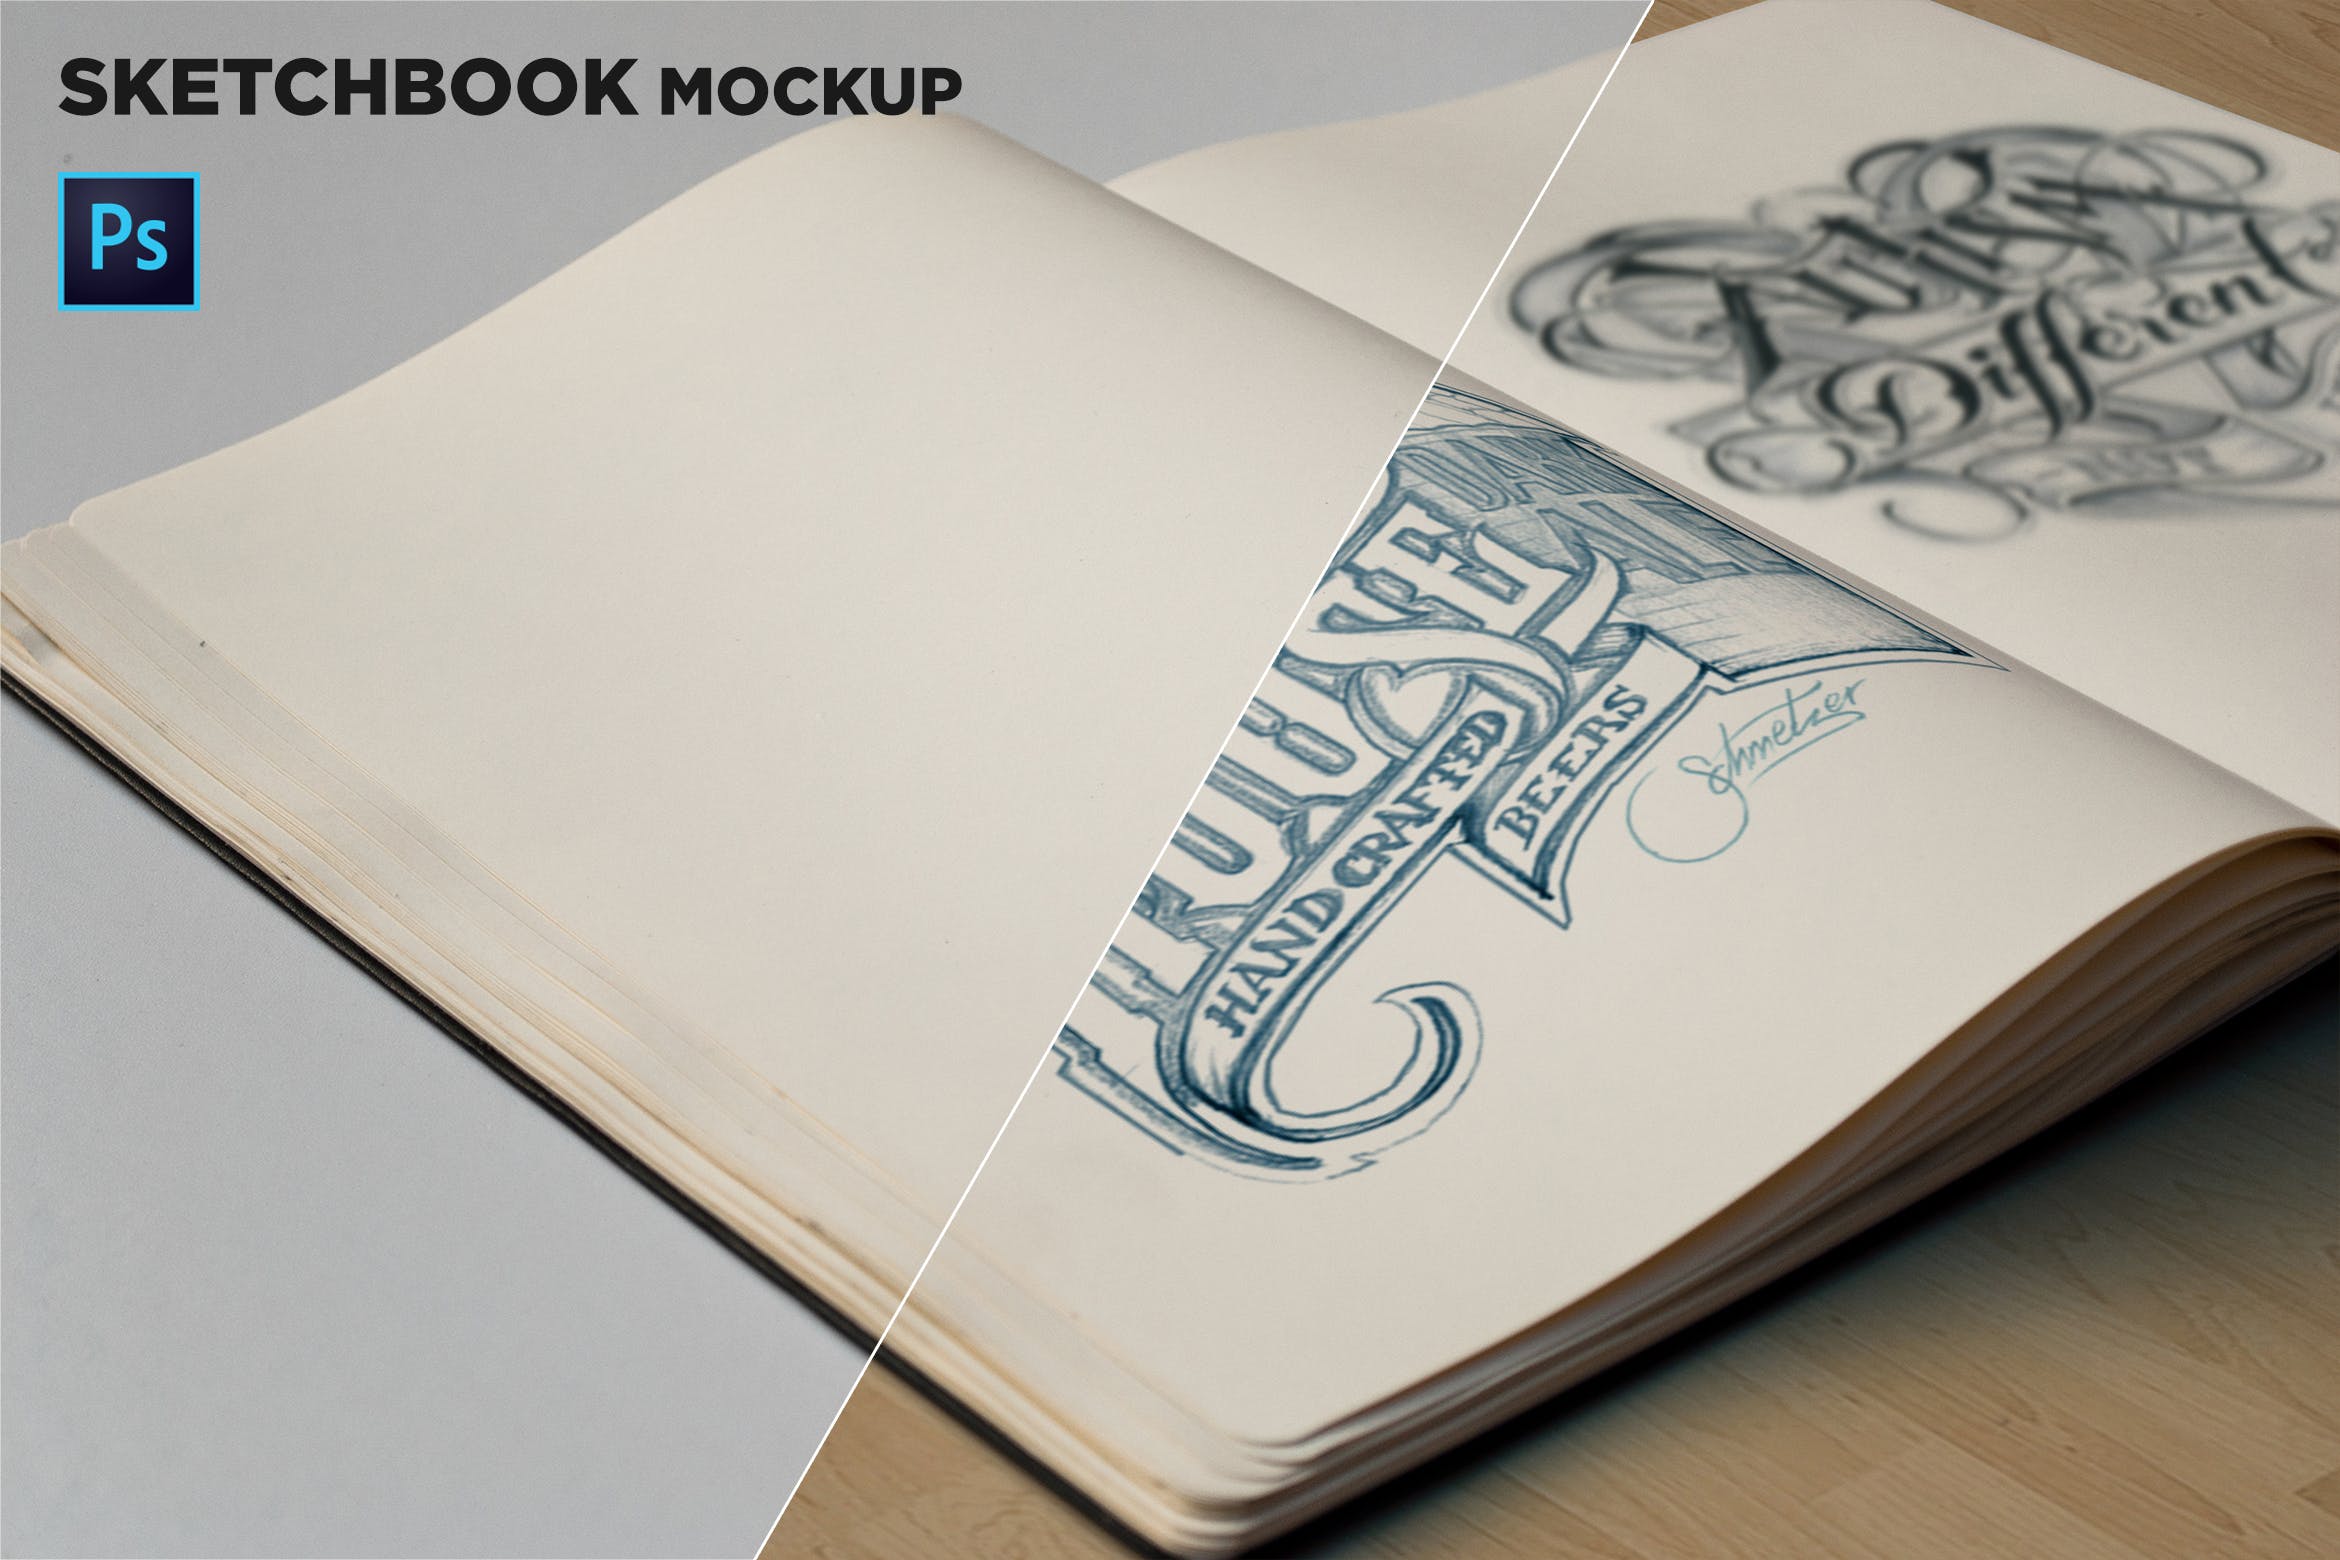 素描本内页设计/艺术作品展示特写镜头样机16图库精选 Sketchbook Mockup Closeup插图